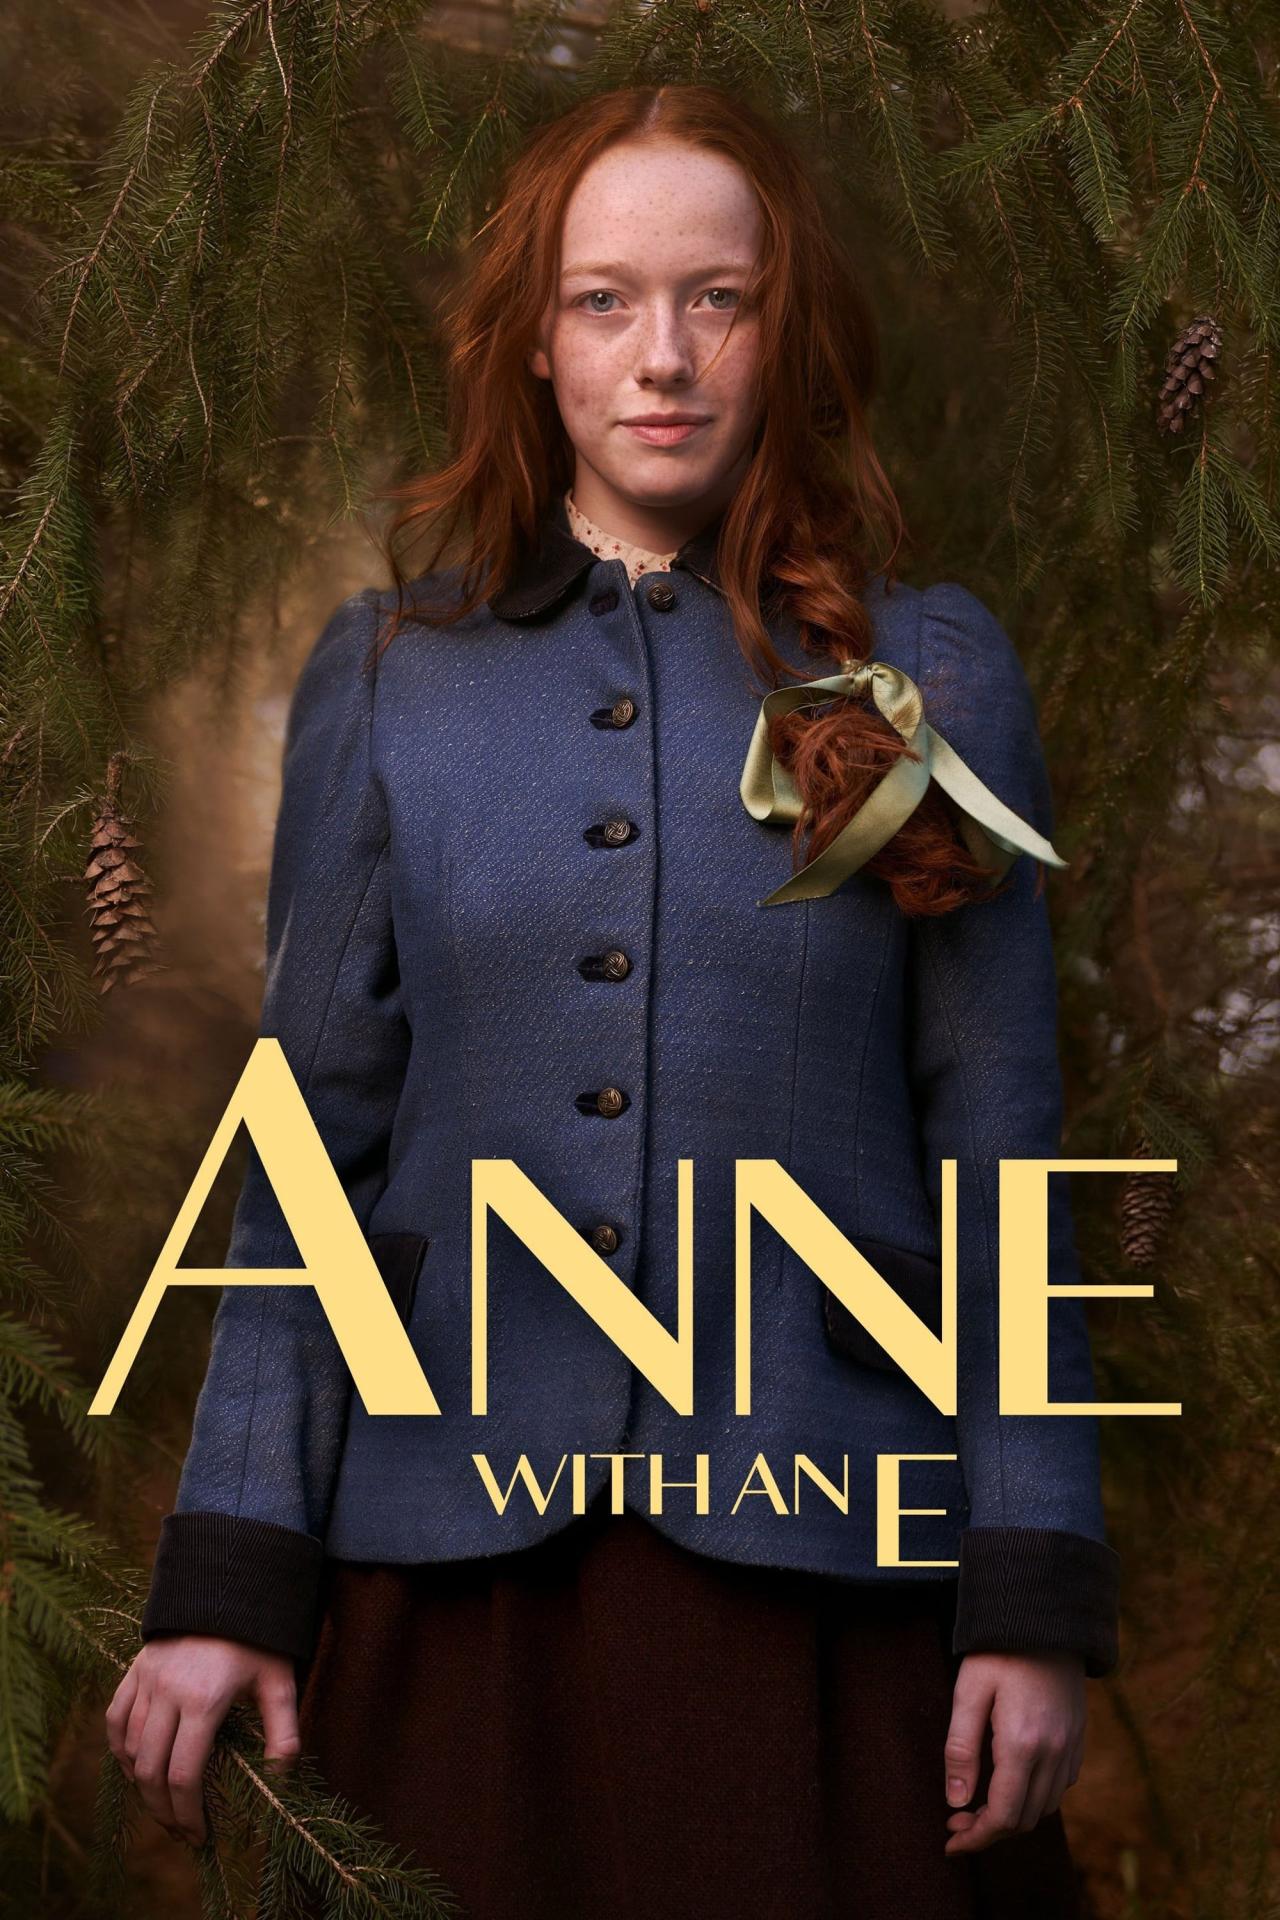 Affiche de la série Anne with an E poster